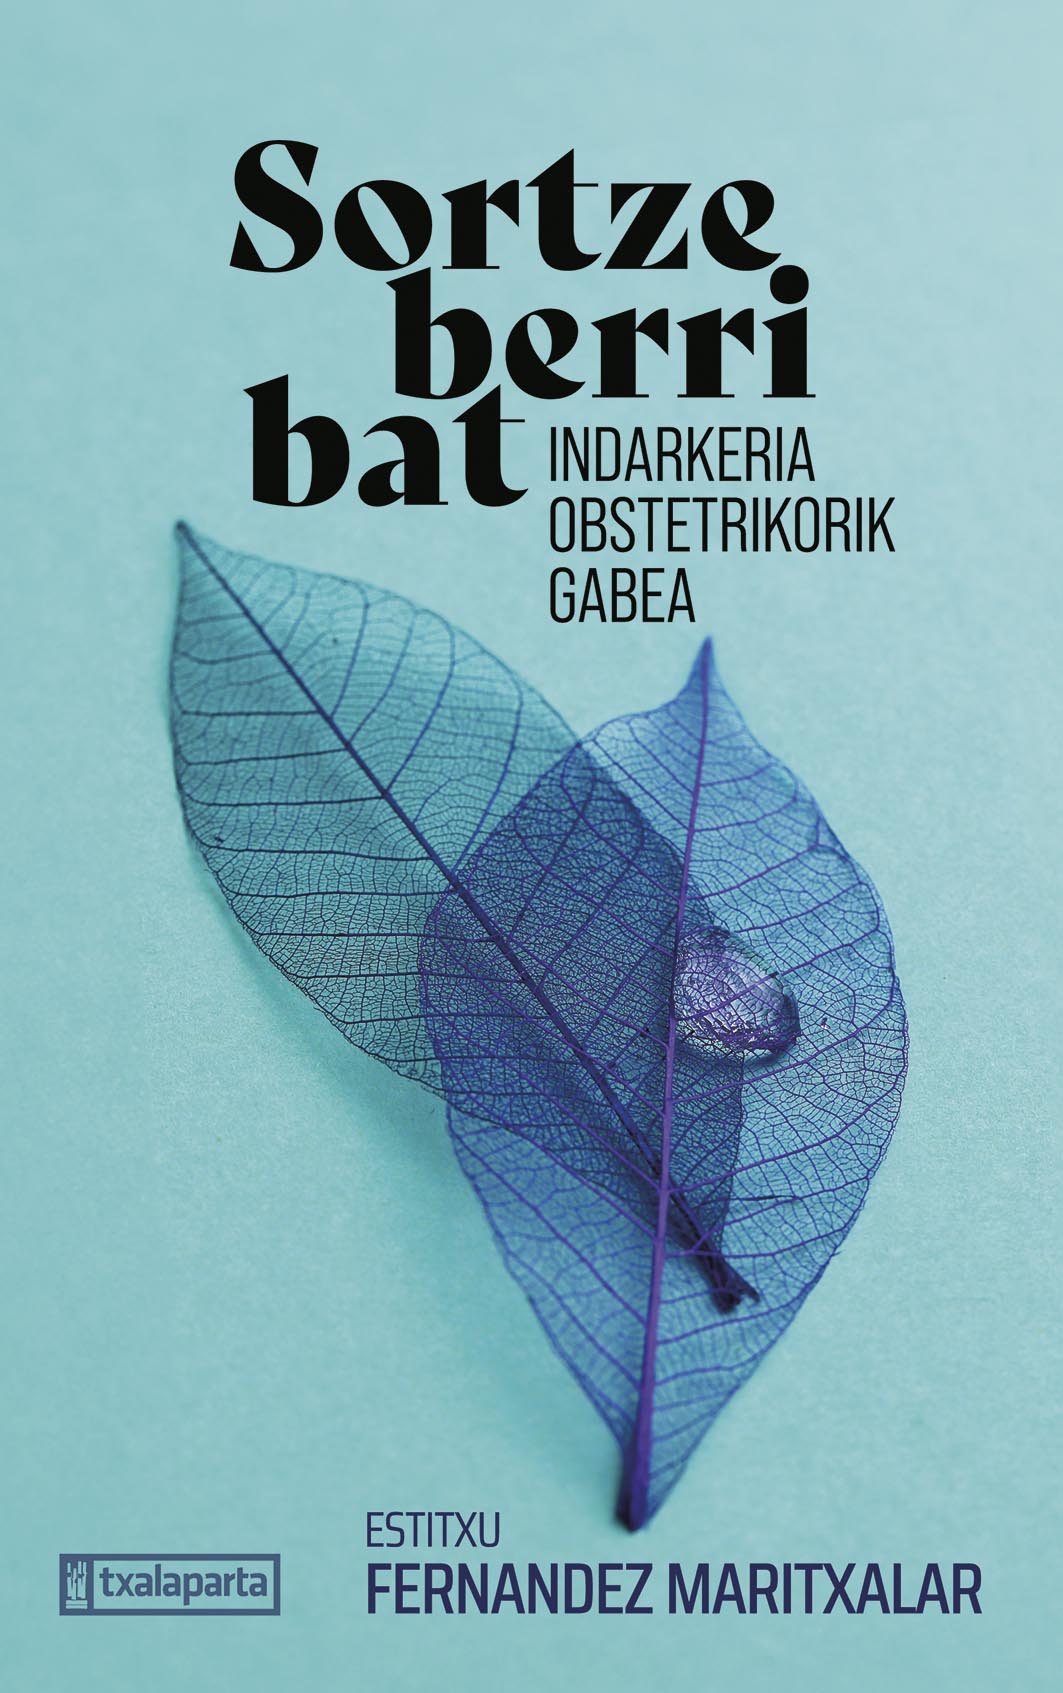 Presentación del libro: Sortze berri bat